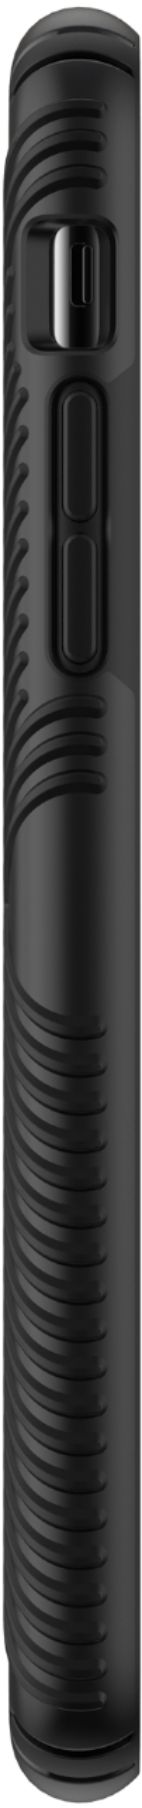 スマホアクセサリー iPhone用ケース Best Buy: Speck Presidio Grip Case for Apple® iPhone® 11 Pro Max 